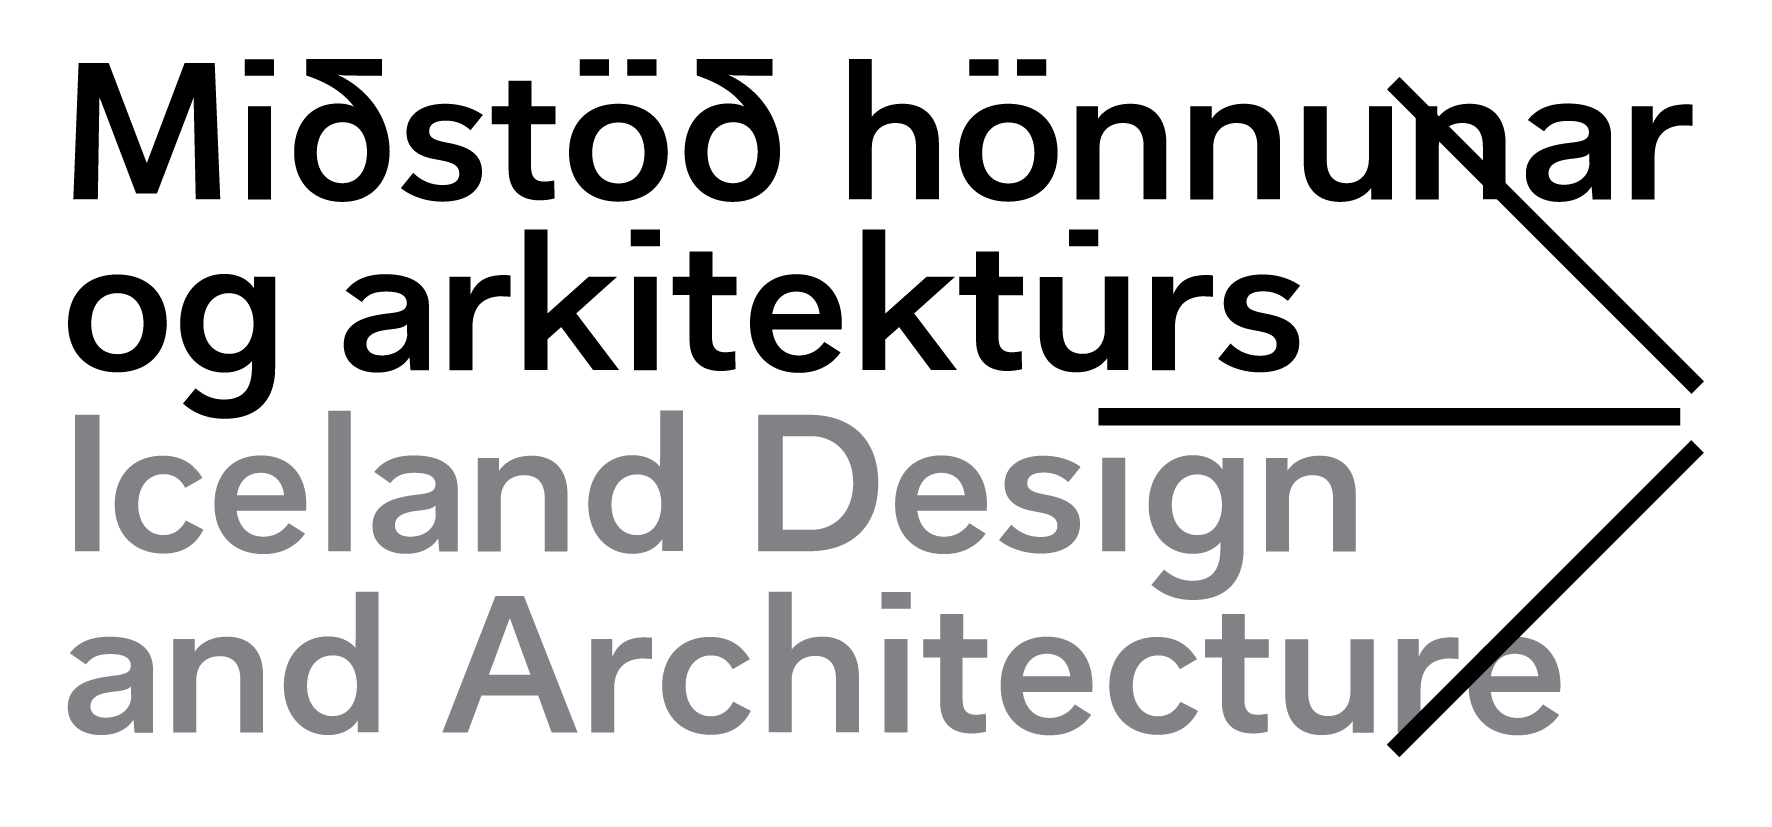 Miðstöð hönnunar og arkitektúrs